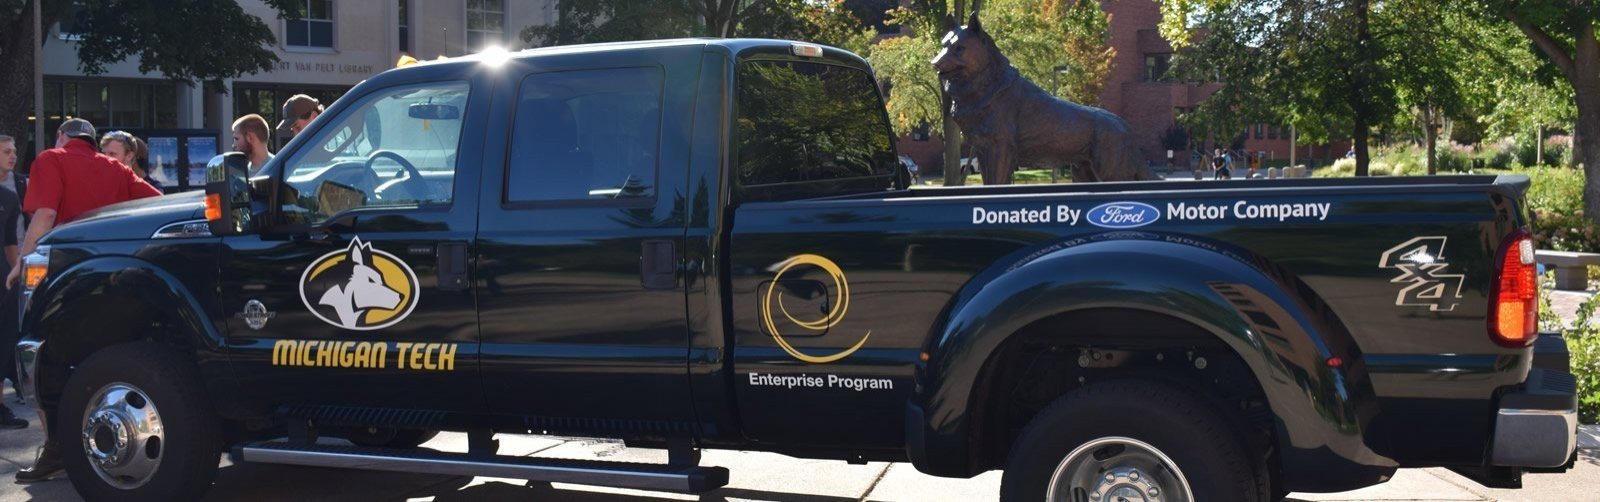 Black Ford truck donated for The Enterprise Program